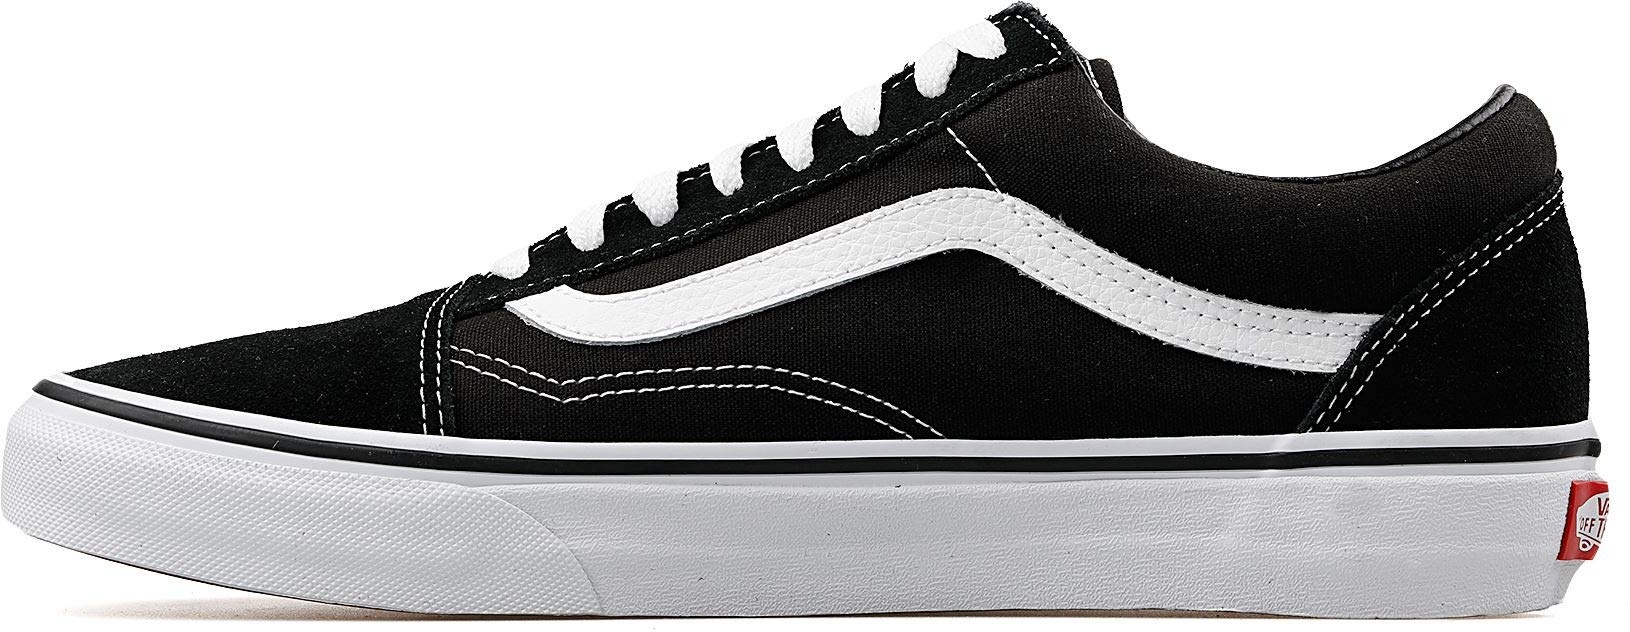 Vans Unisex Old Skool Classic Suede/Canvas Sneakers, Black White, 34.5 EU